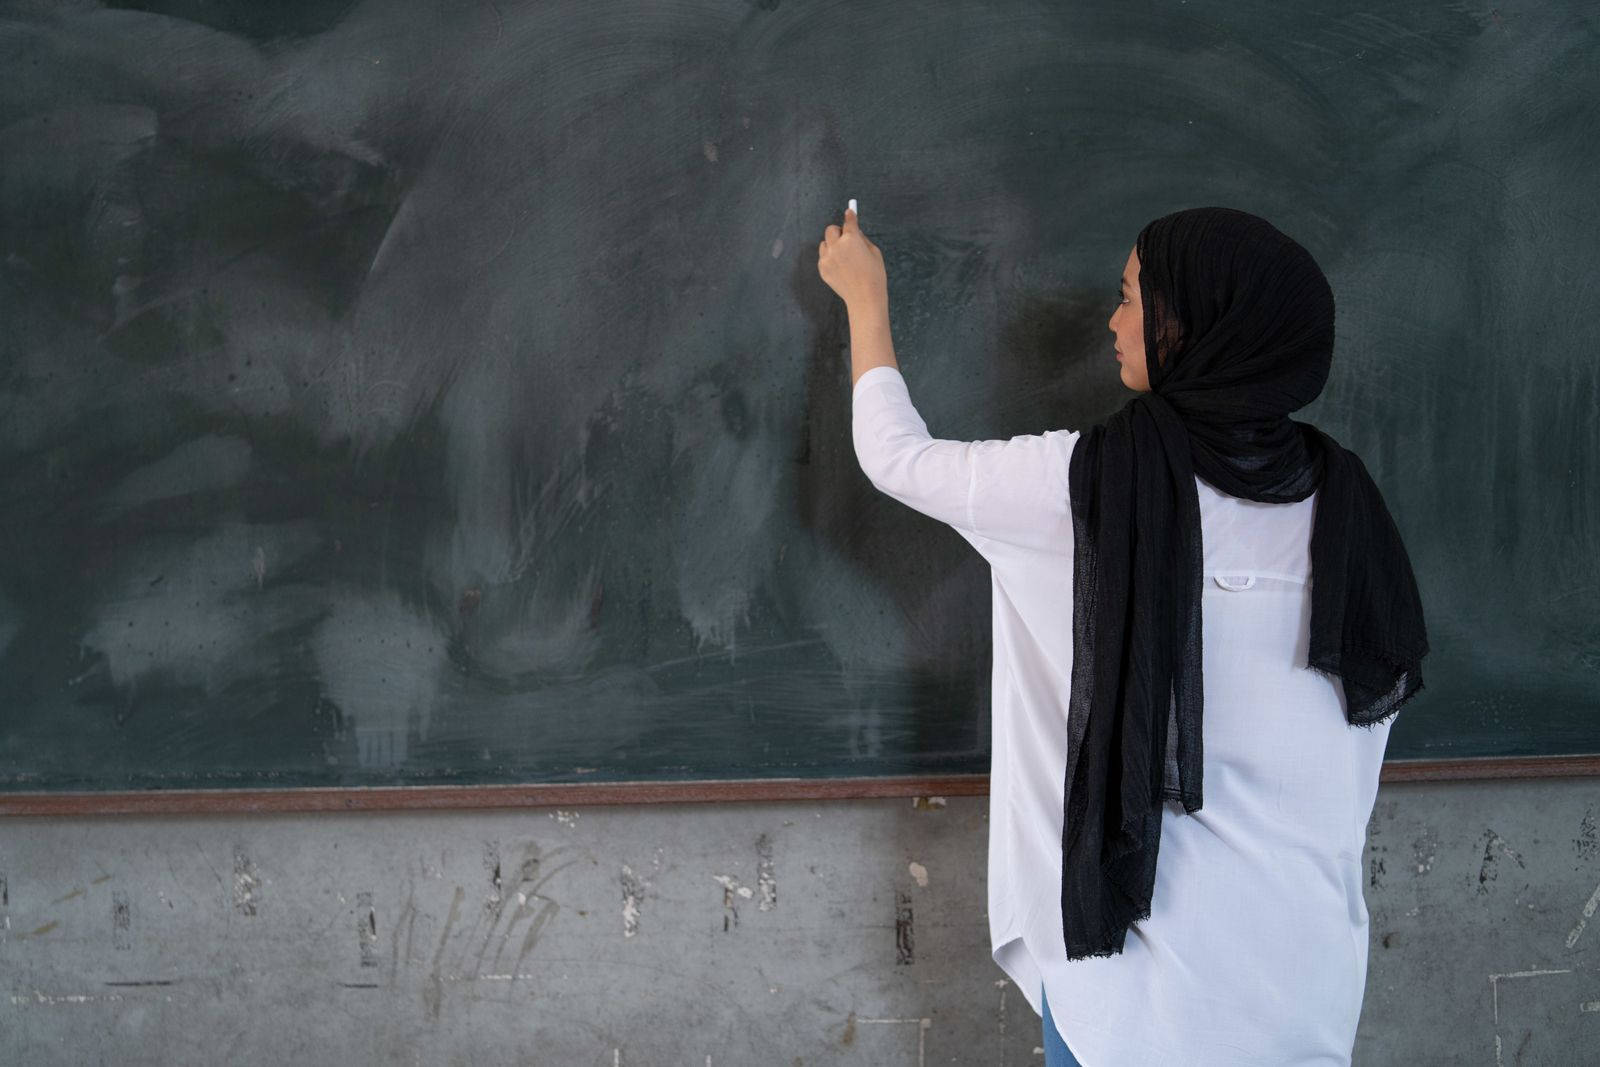 Malaysian Teacher Writing On Blackboard